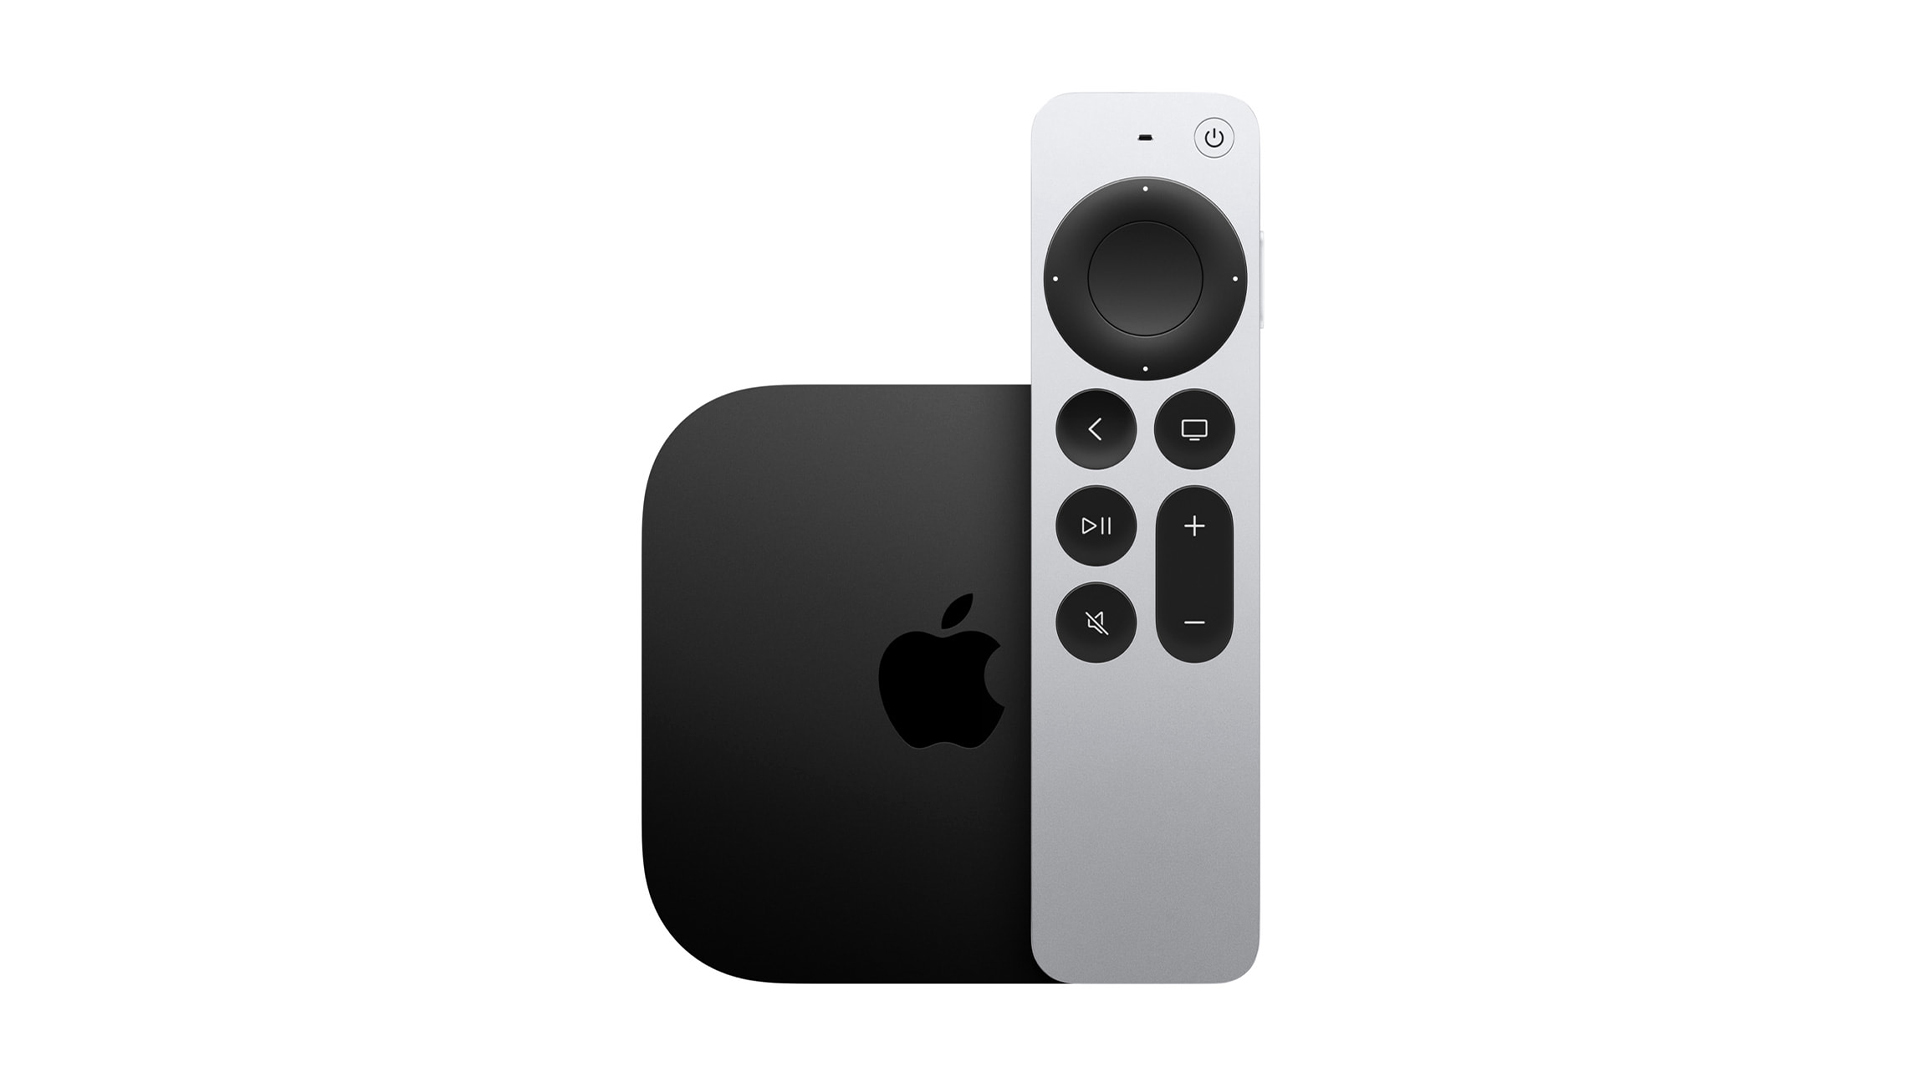 4K TV yayıncısı: Apple TV 4K